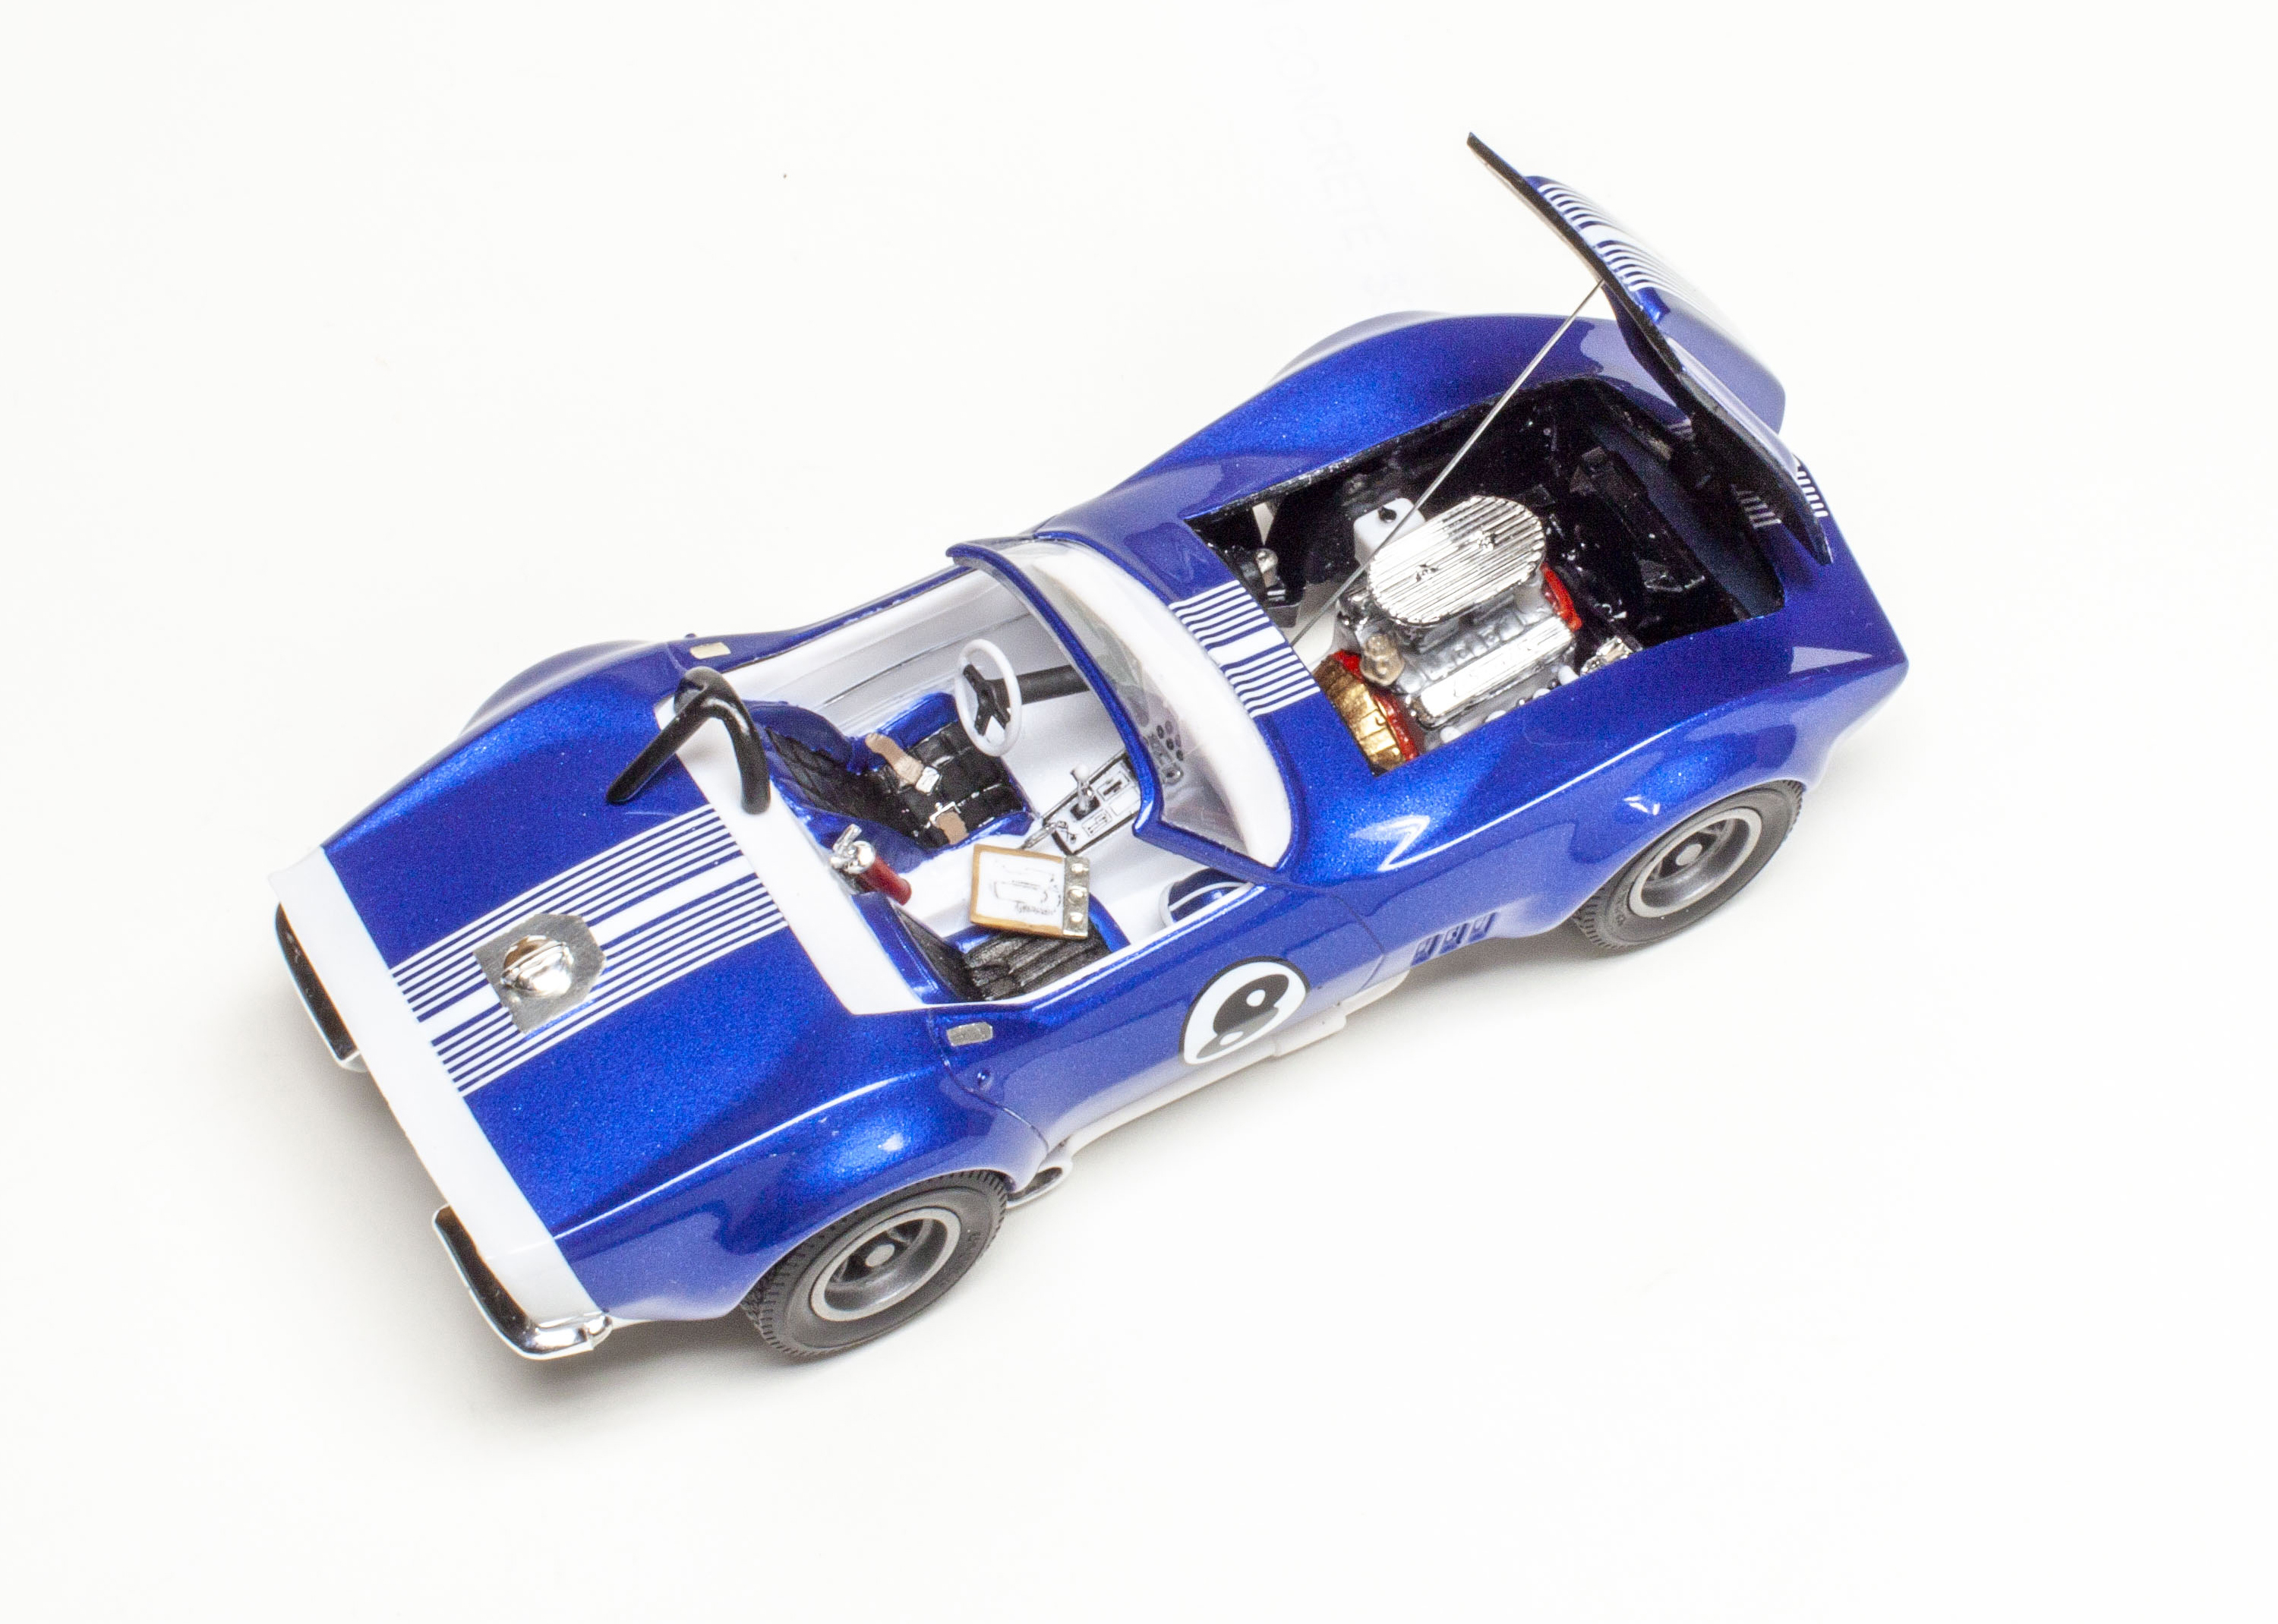 AMT 1/25 scale '68 Corvette plastic model kit review | FineScale